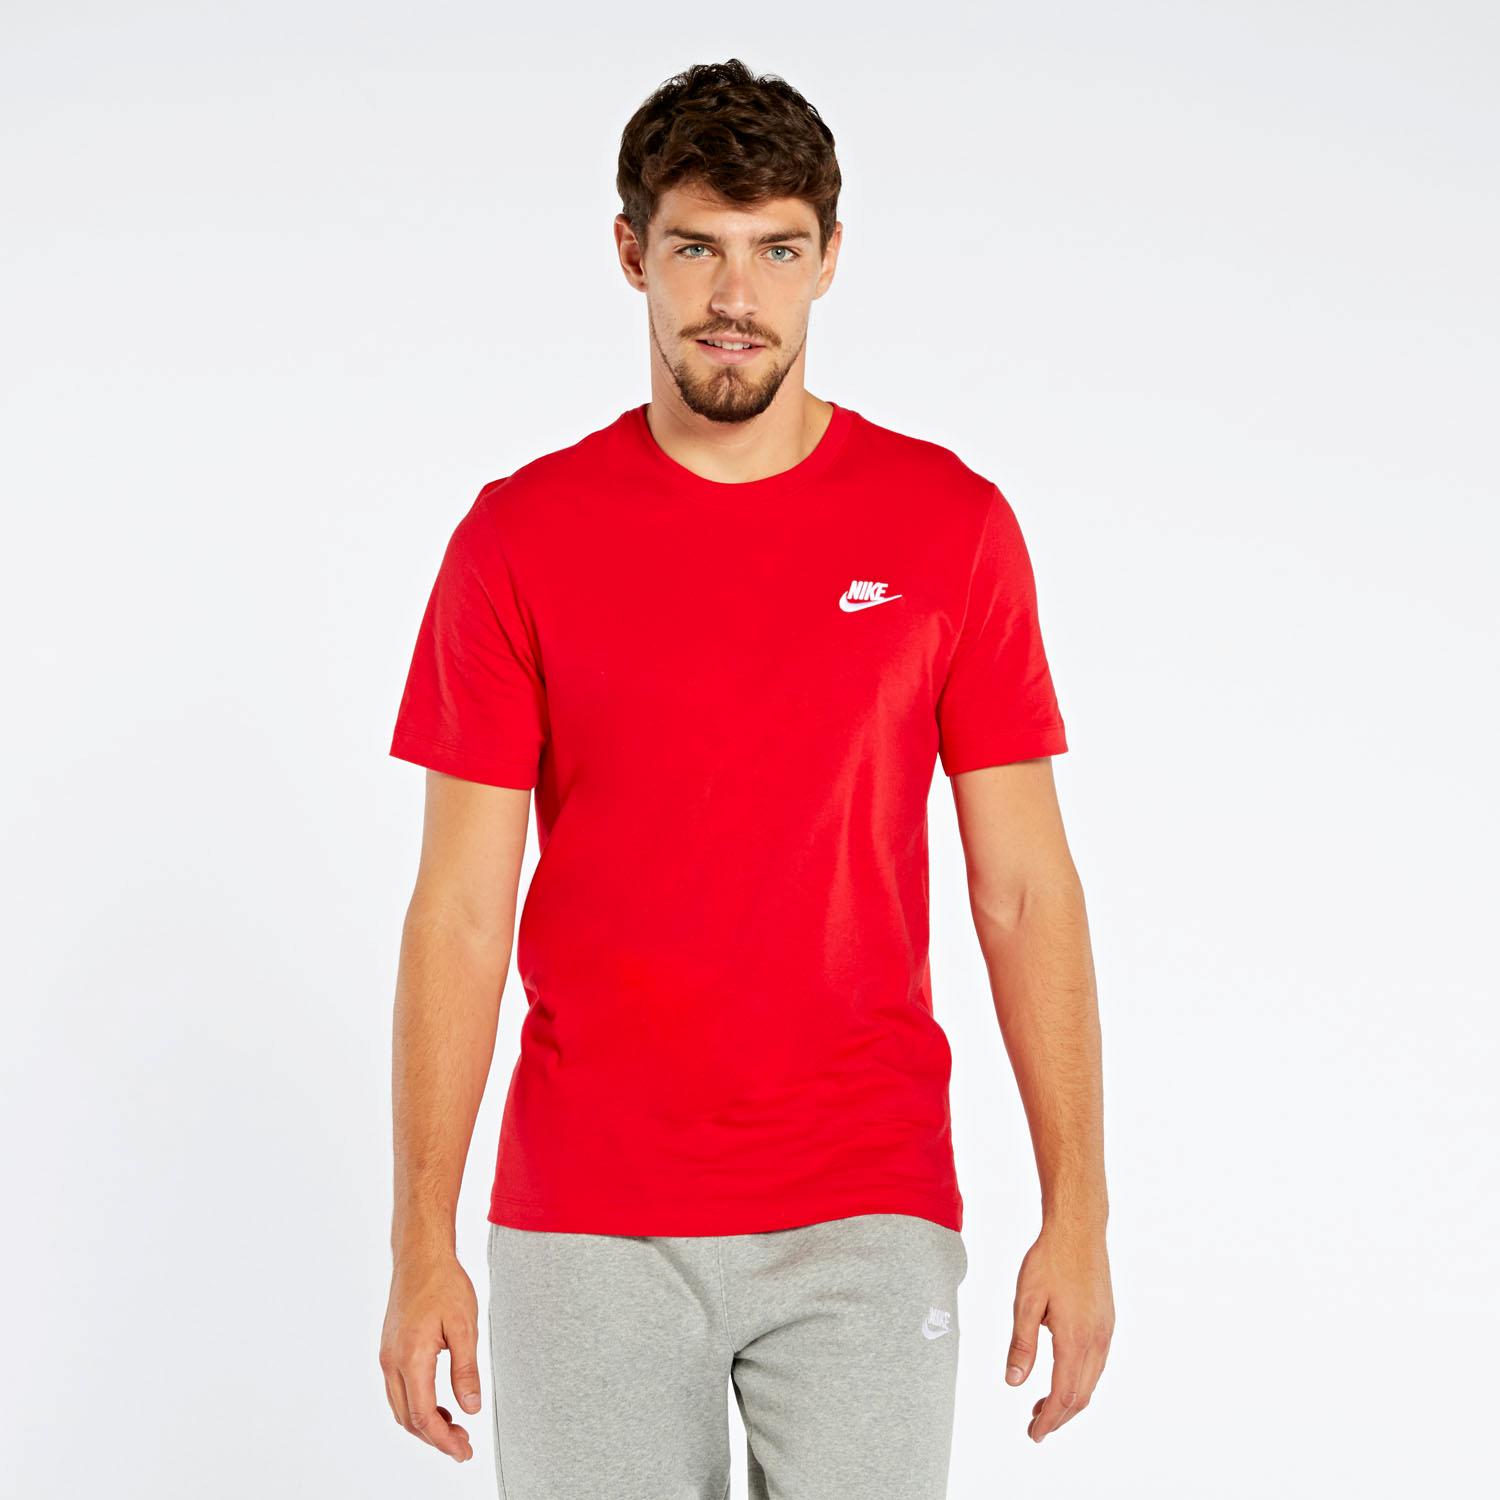 Chelín Picasso Despertar Camiseta Nike Clublogo Rojo Camiseta Hombre | Sprinter